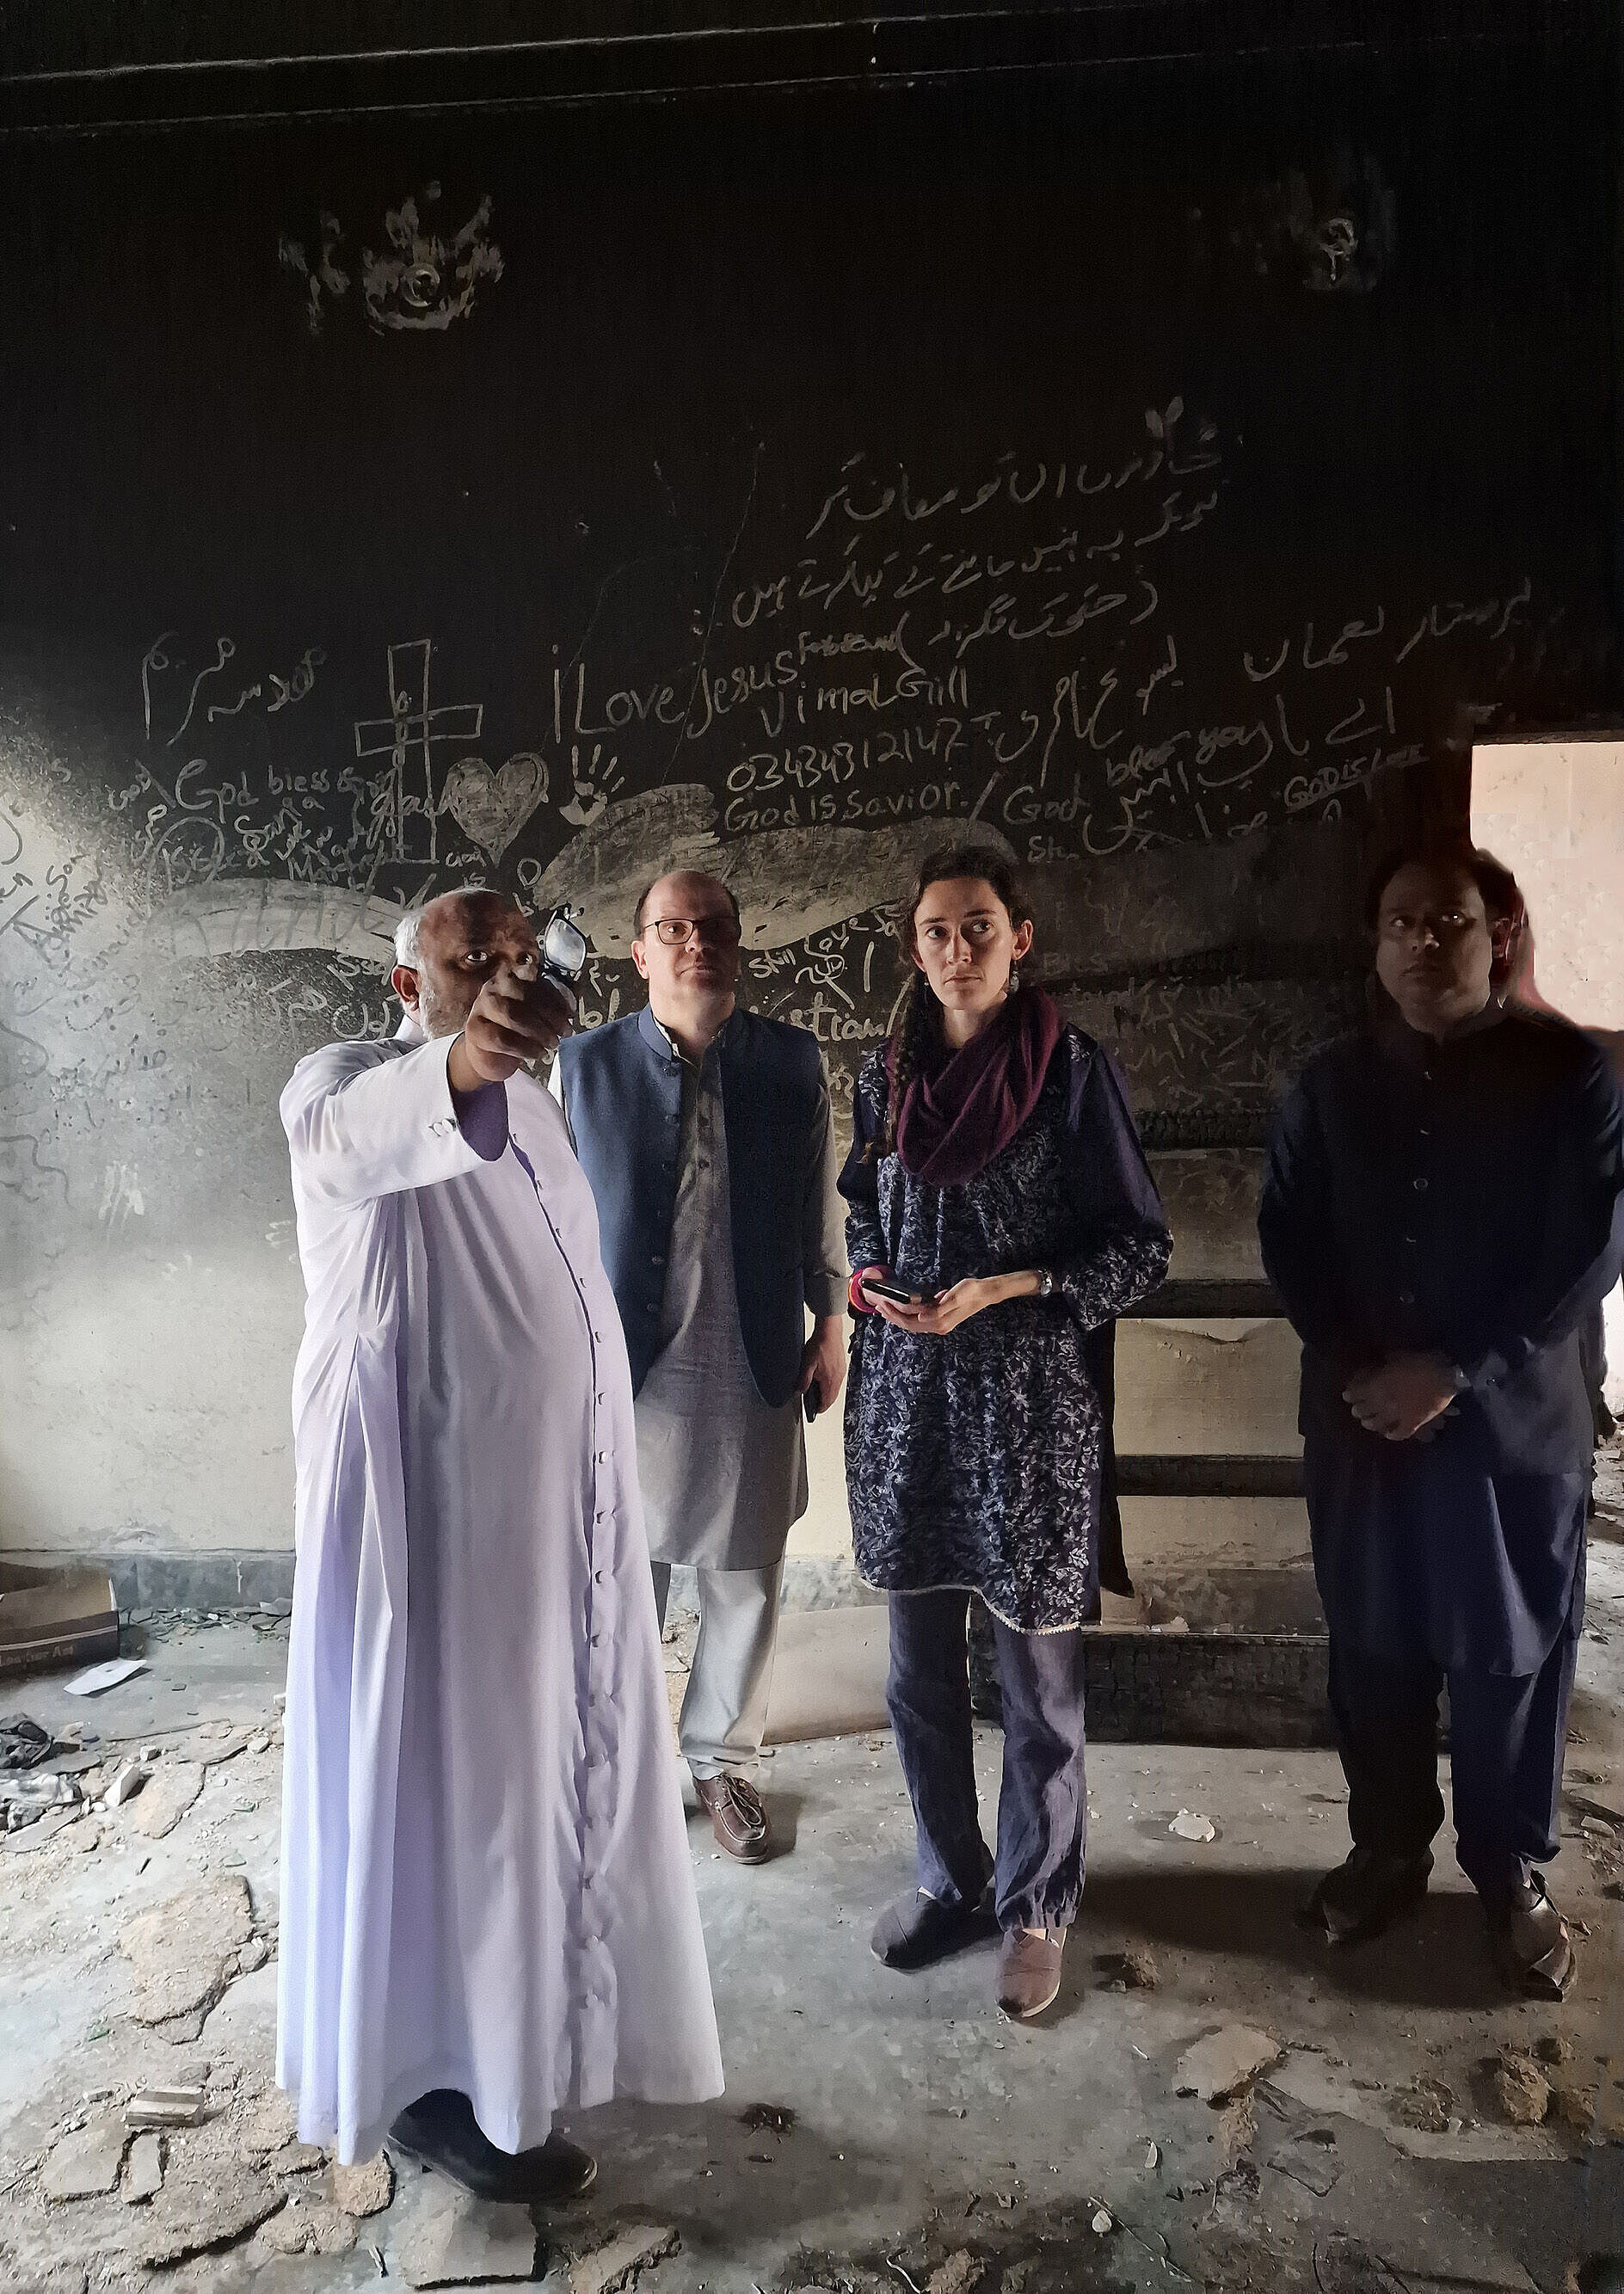 Besuch in einer zerstörten Kirche im Ort Jaranwala (Pakistan).